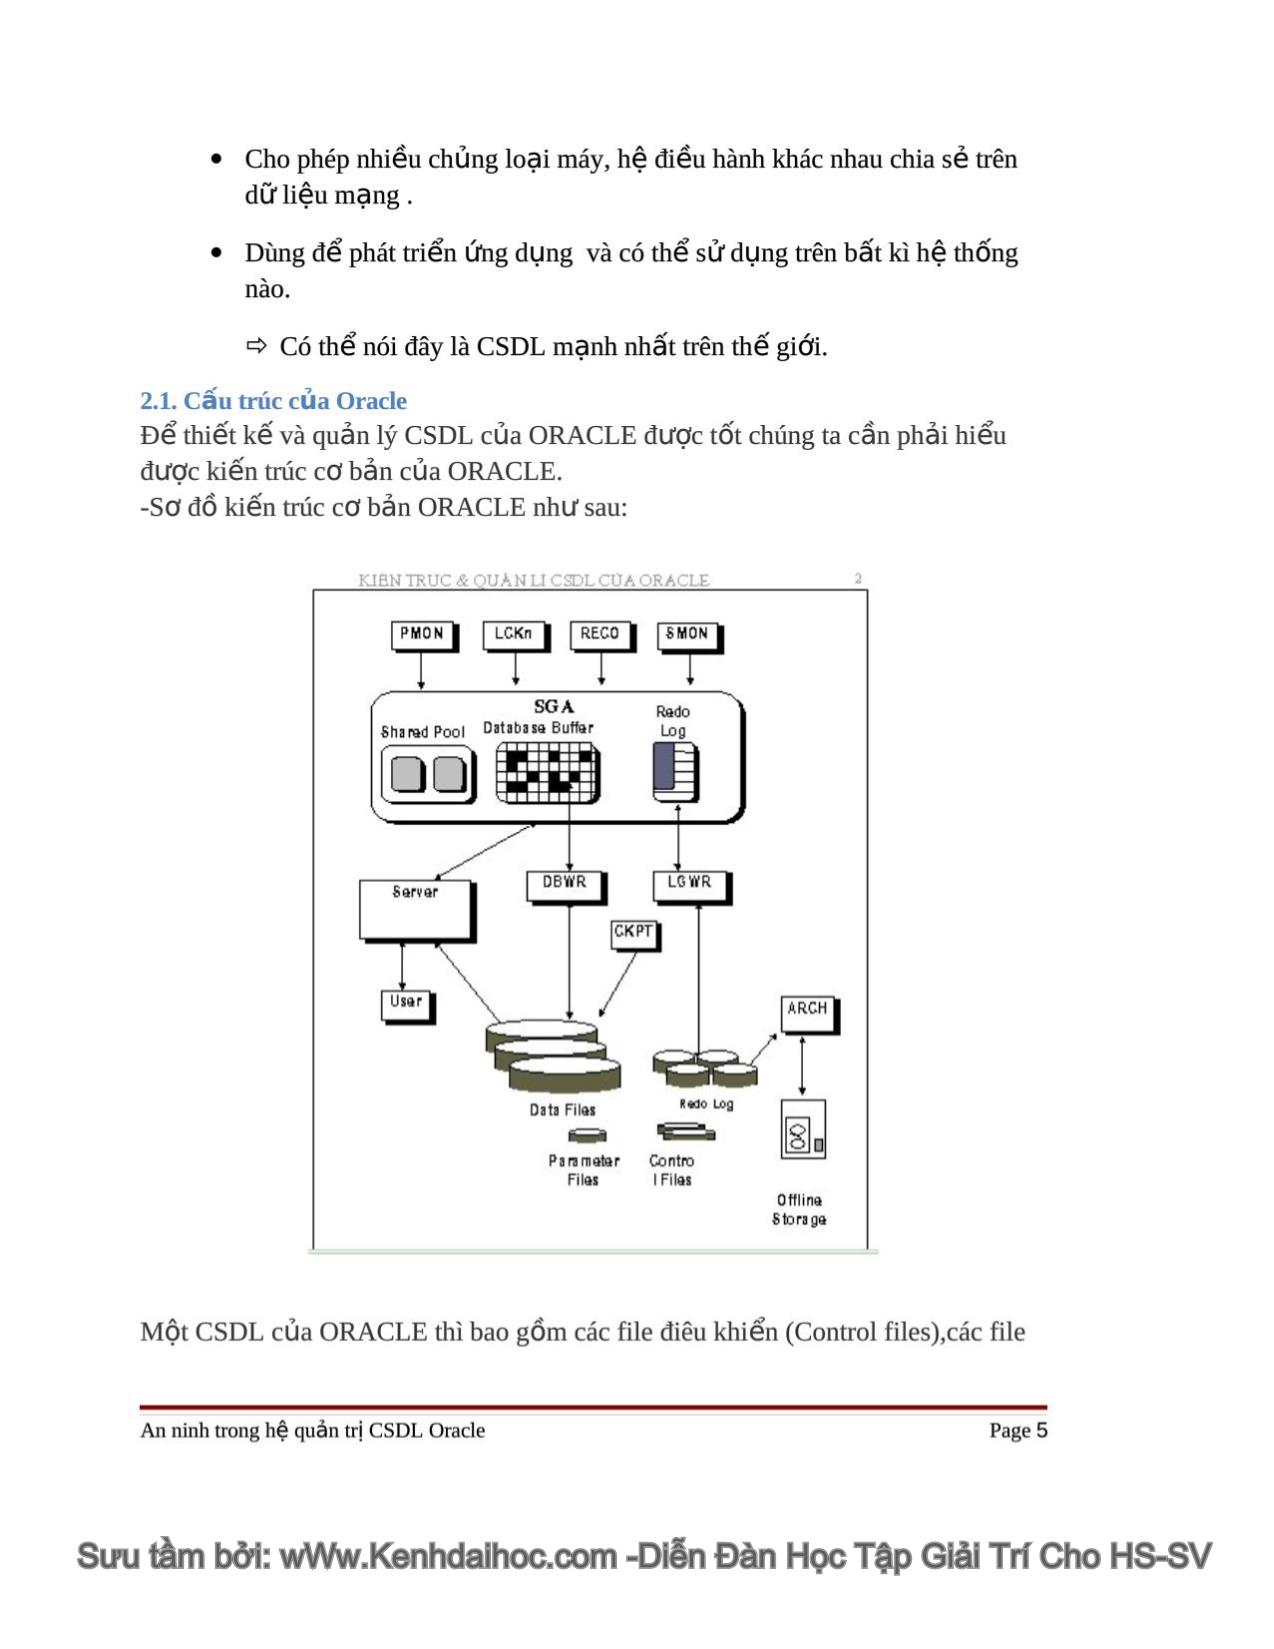 An ninh trong hệ quản trị CSDL Oracle trang 5